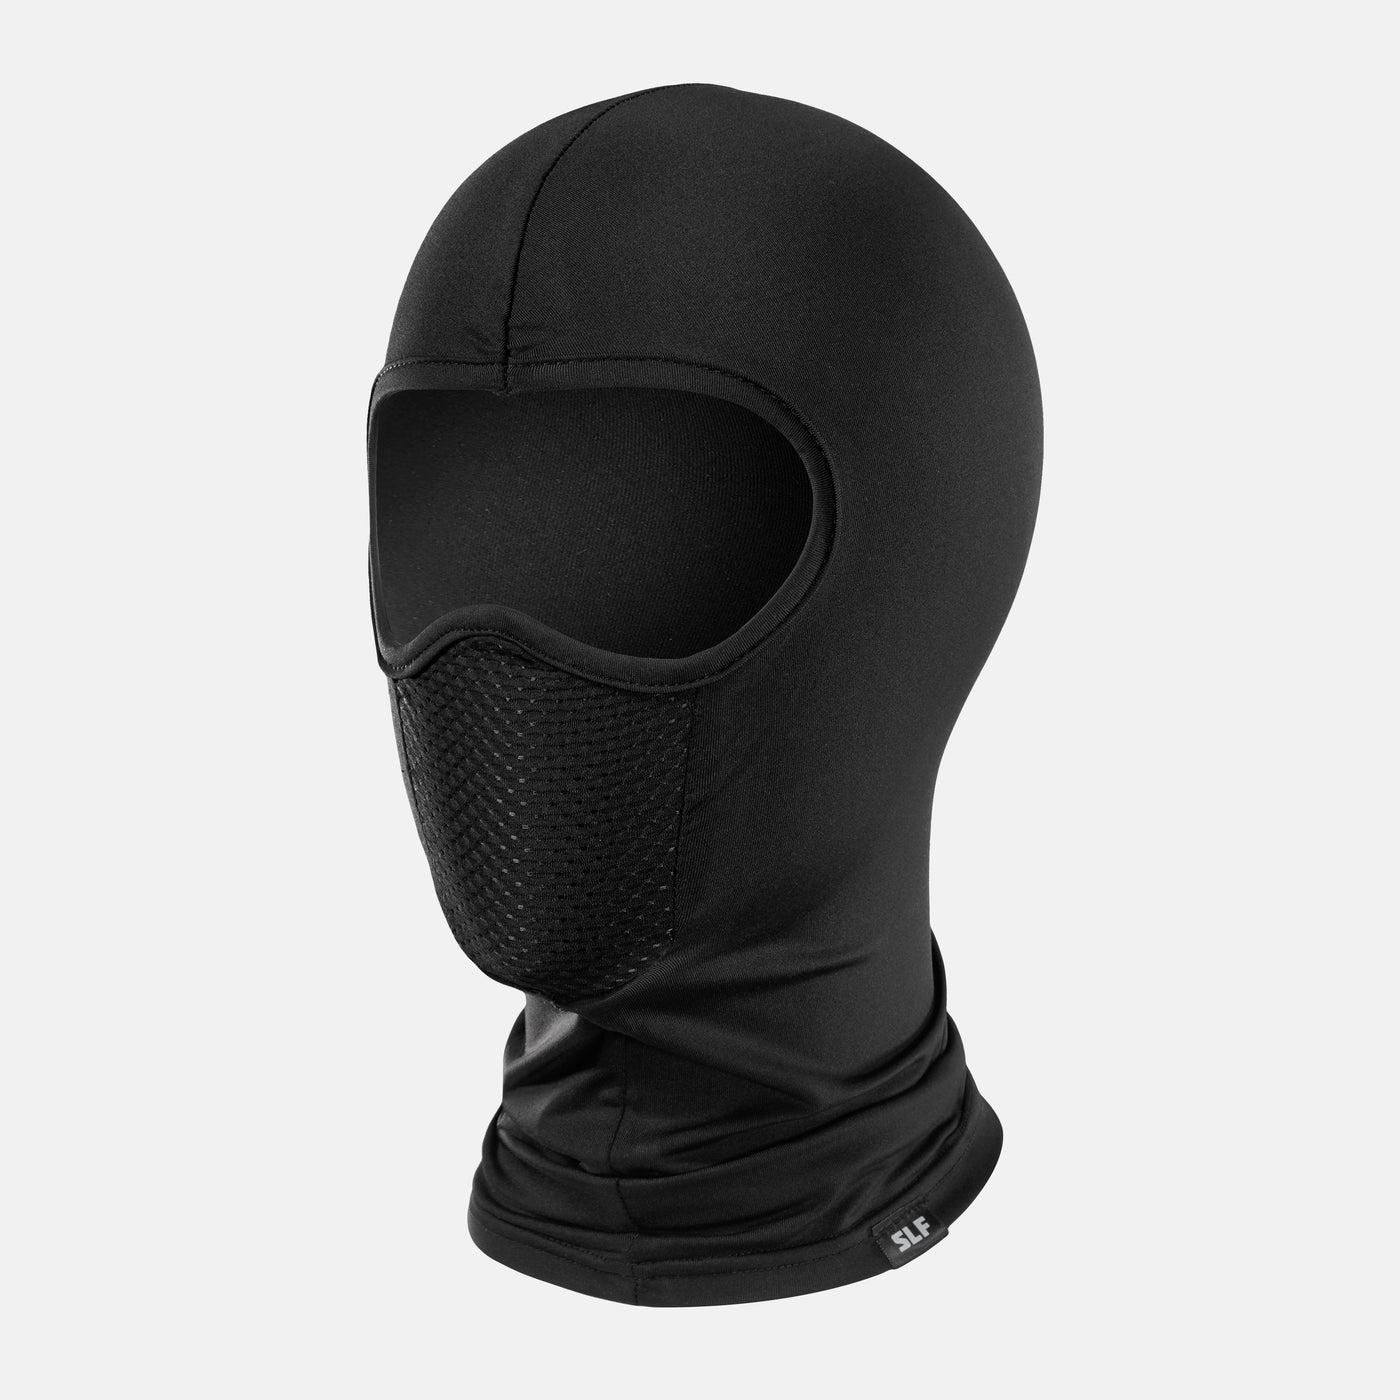 Basic Black Shiesty Mask